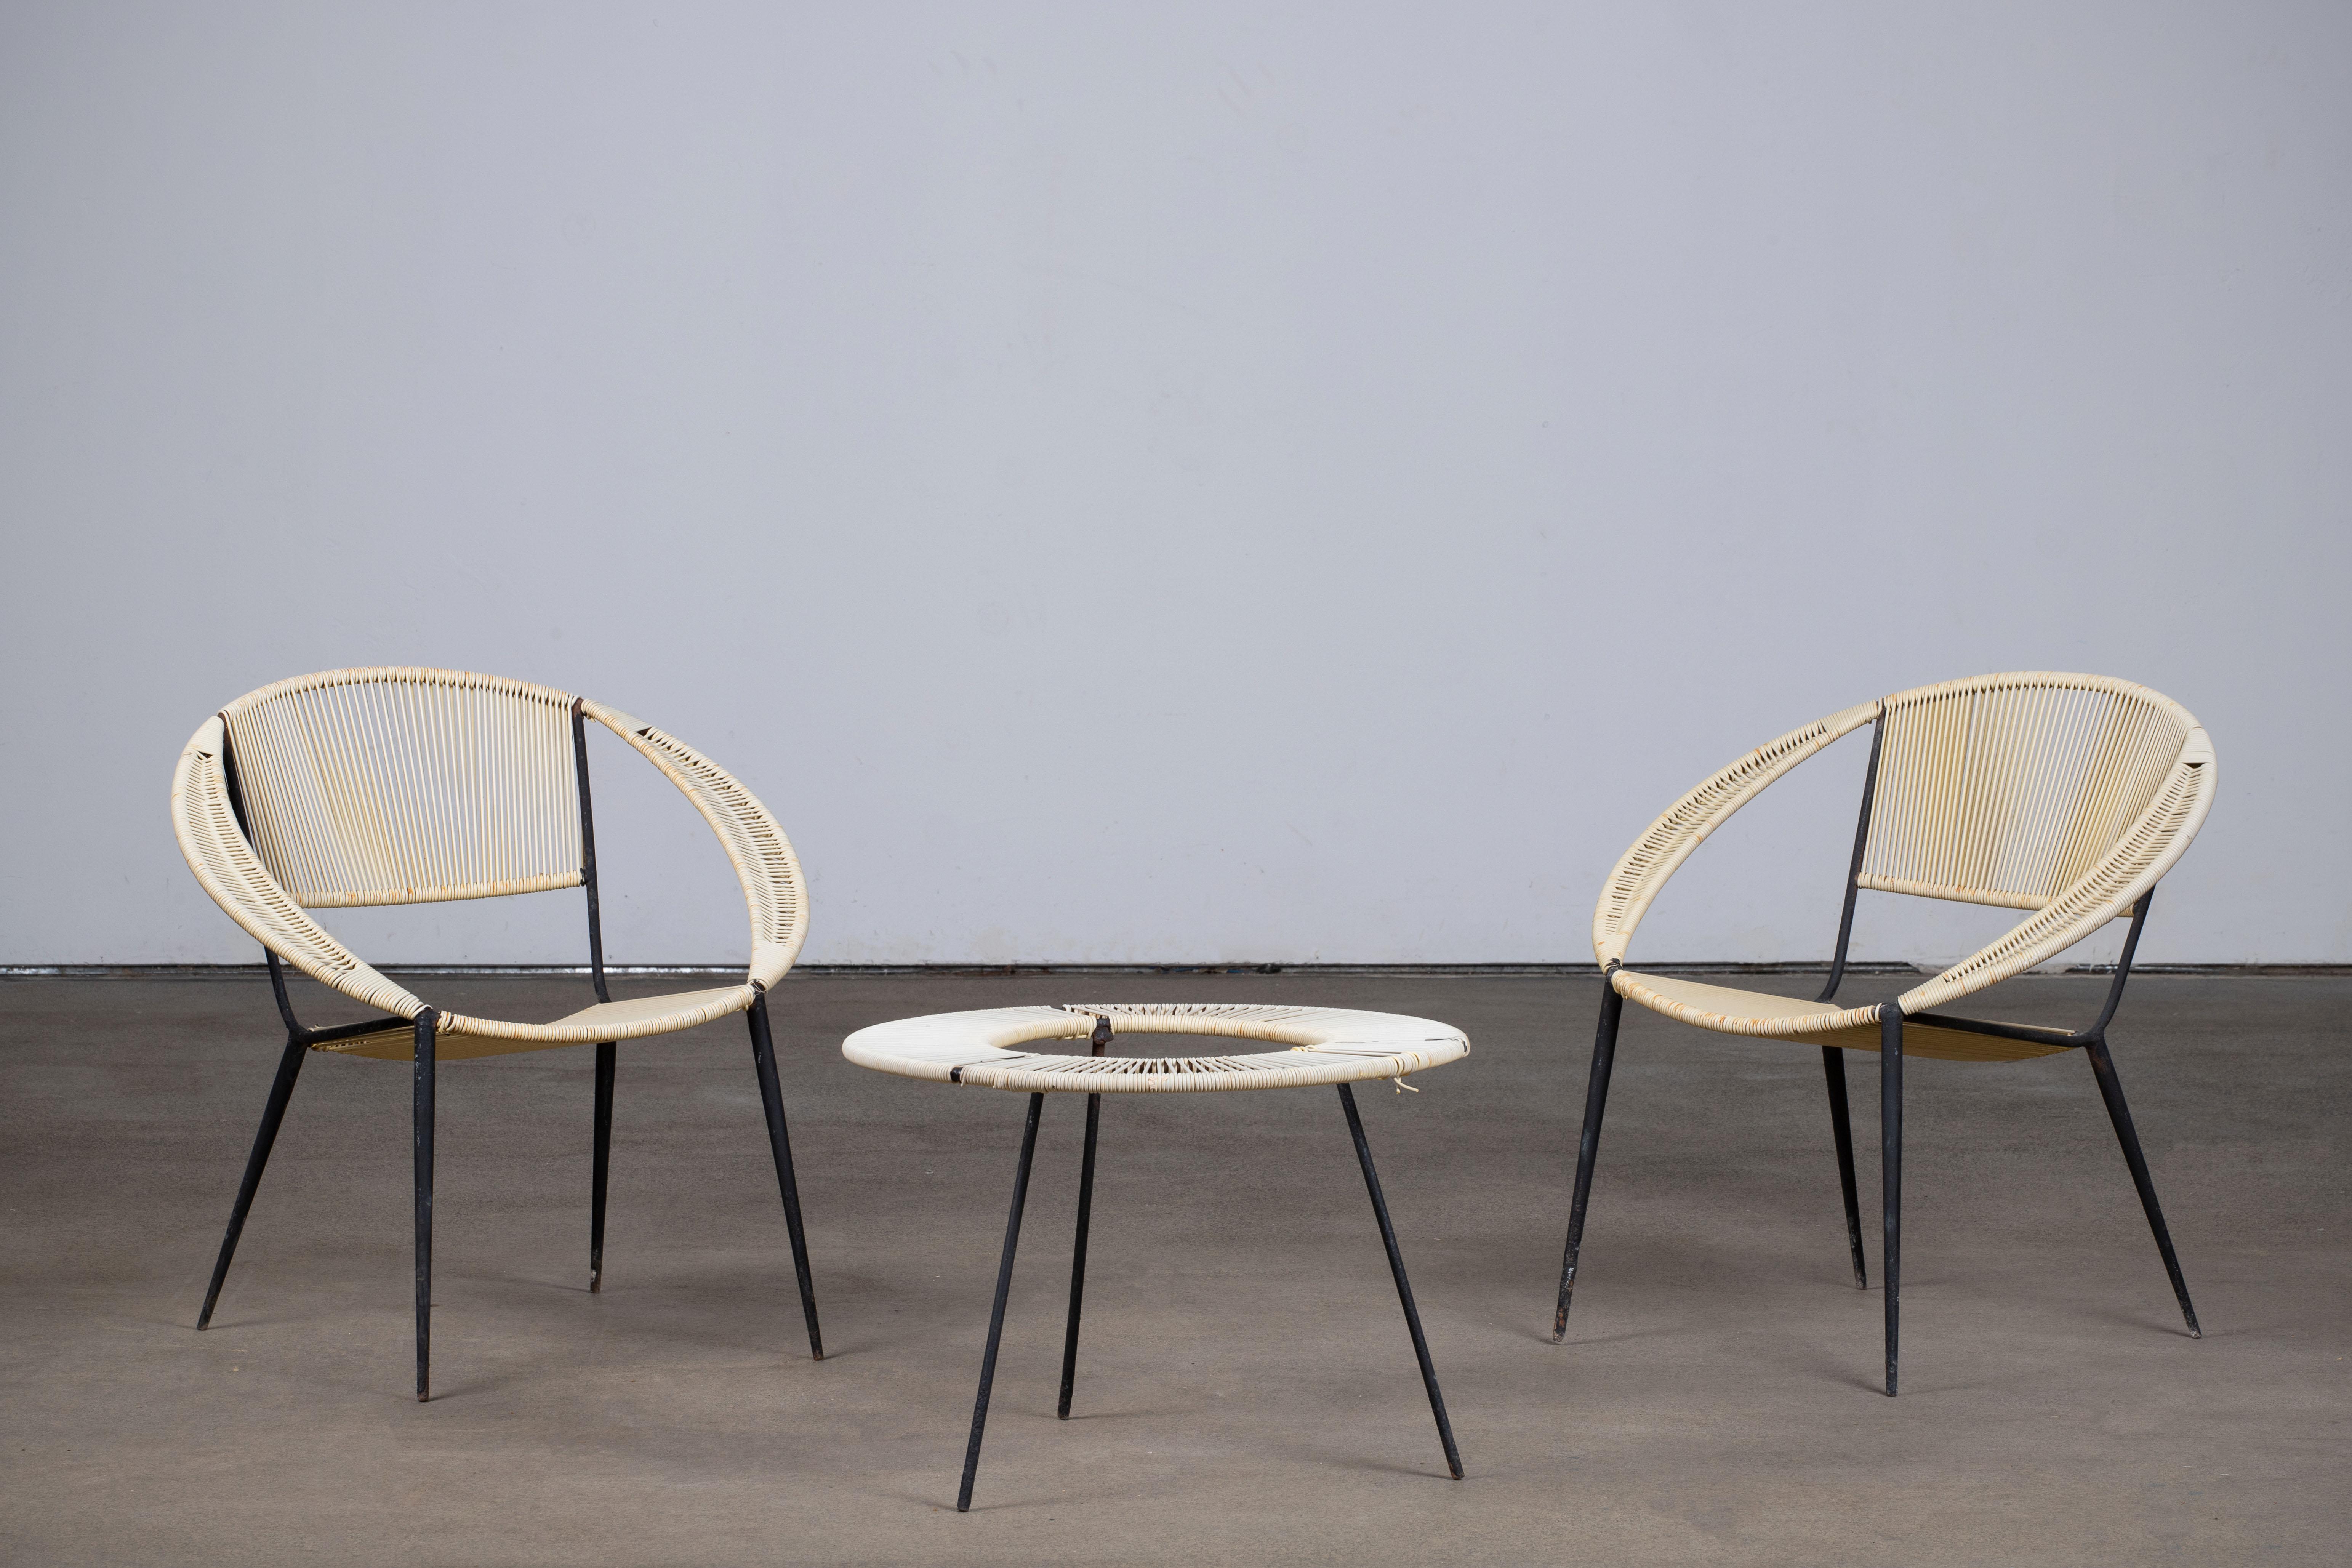 Garten-Sessel-Set im Stil von Gastone Rinaldi, Italien, 1950er Jahre.
Besteht aus zwei Sesseln und einem Couchtisch.

Zeigt Gebrauchsspuren, Rostspuren an den Strukturen. Vollständige Restaurierung auf Anfrage.

Gastone Rinaldi, Gio Ponti,